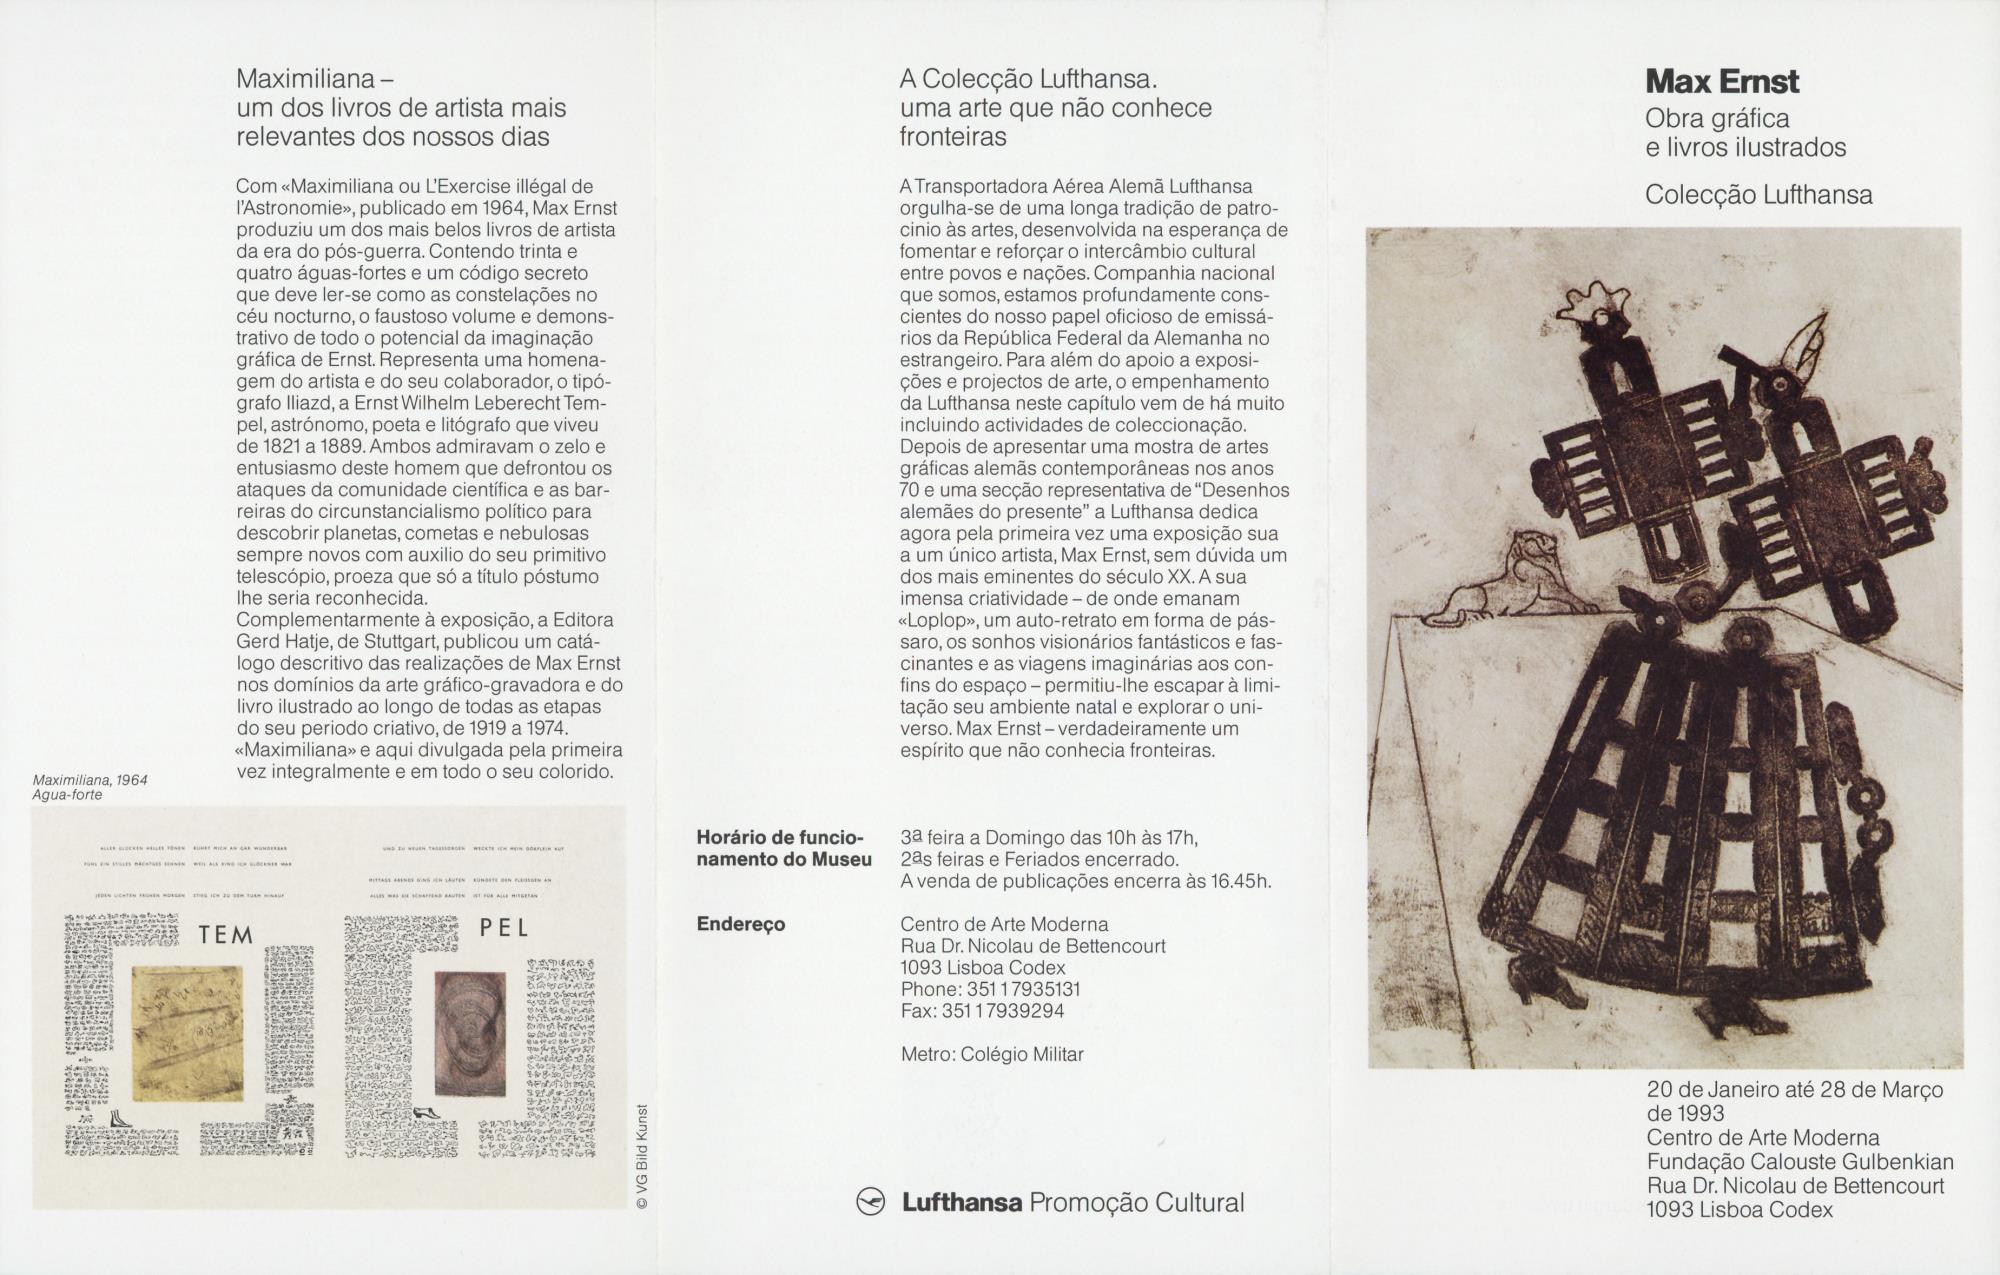 Max Ernst. Obra Gráfica e Livros Ilustrados. Colecção Lufthansa